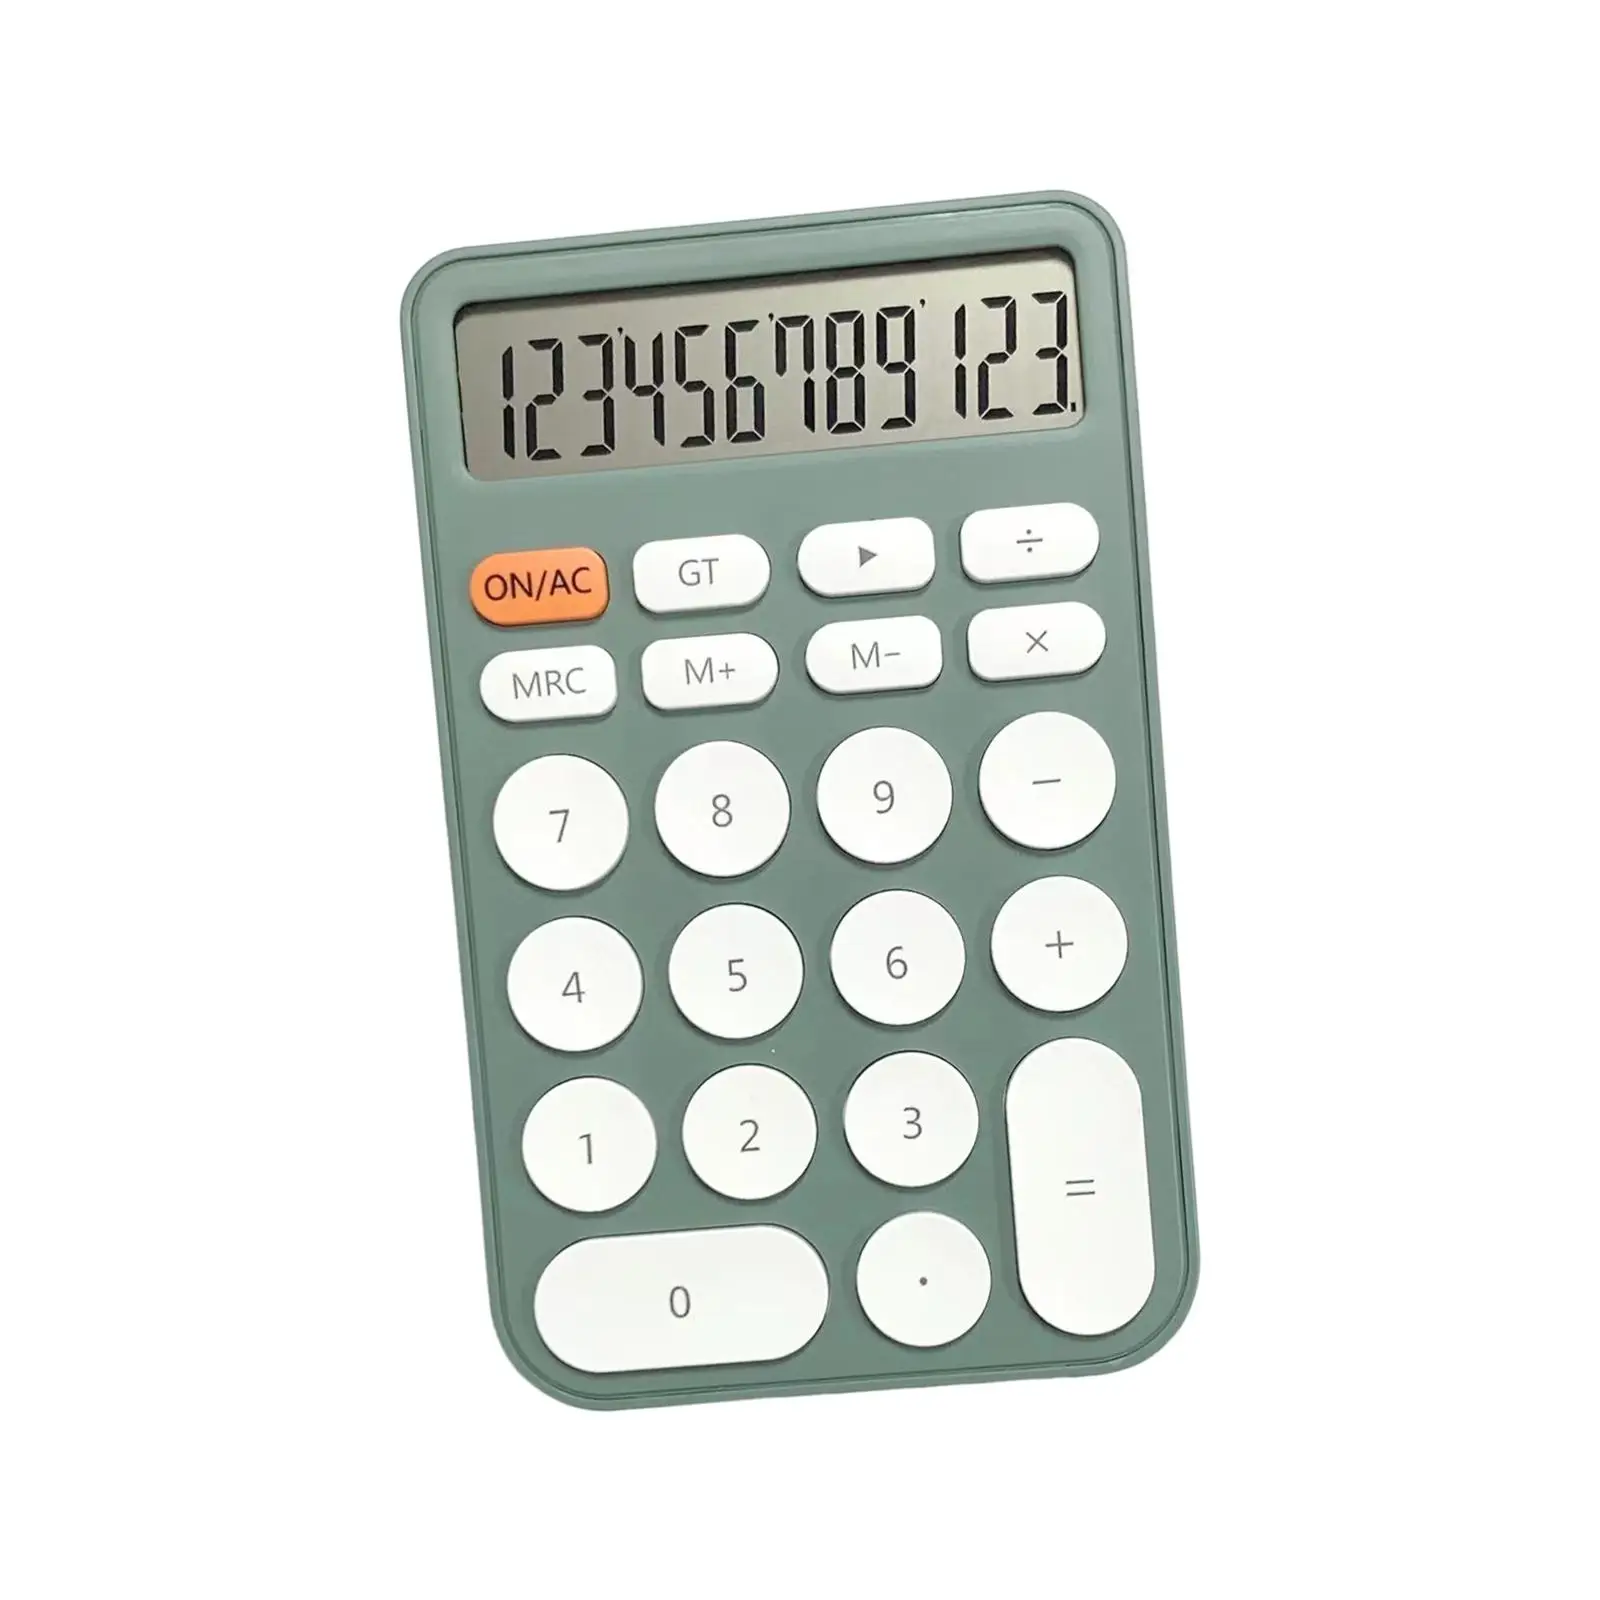 

Настольный калькулятор, финансовый калькулятор, 12-значный портативный цифровой калькулятор, офисный калькулятор для рабочего стола для домашнего и делового использования